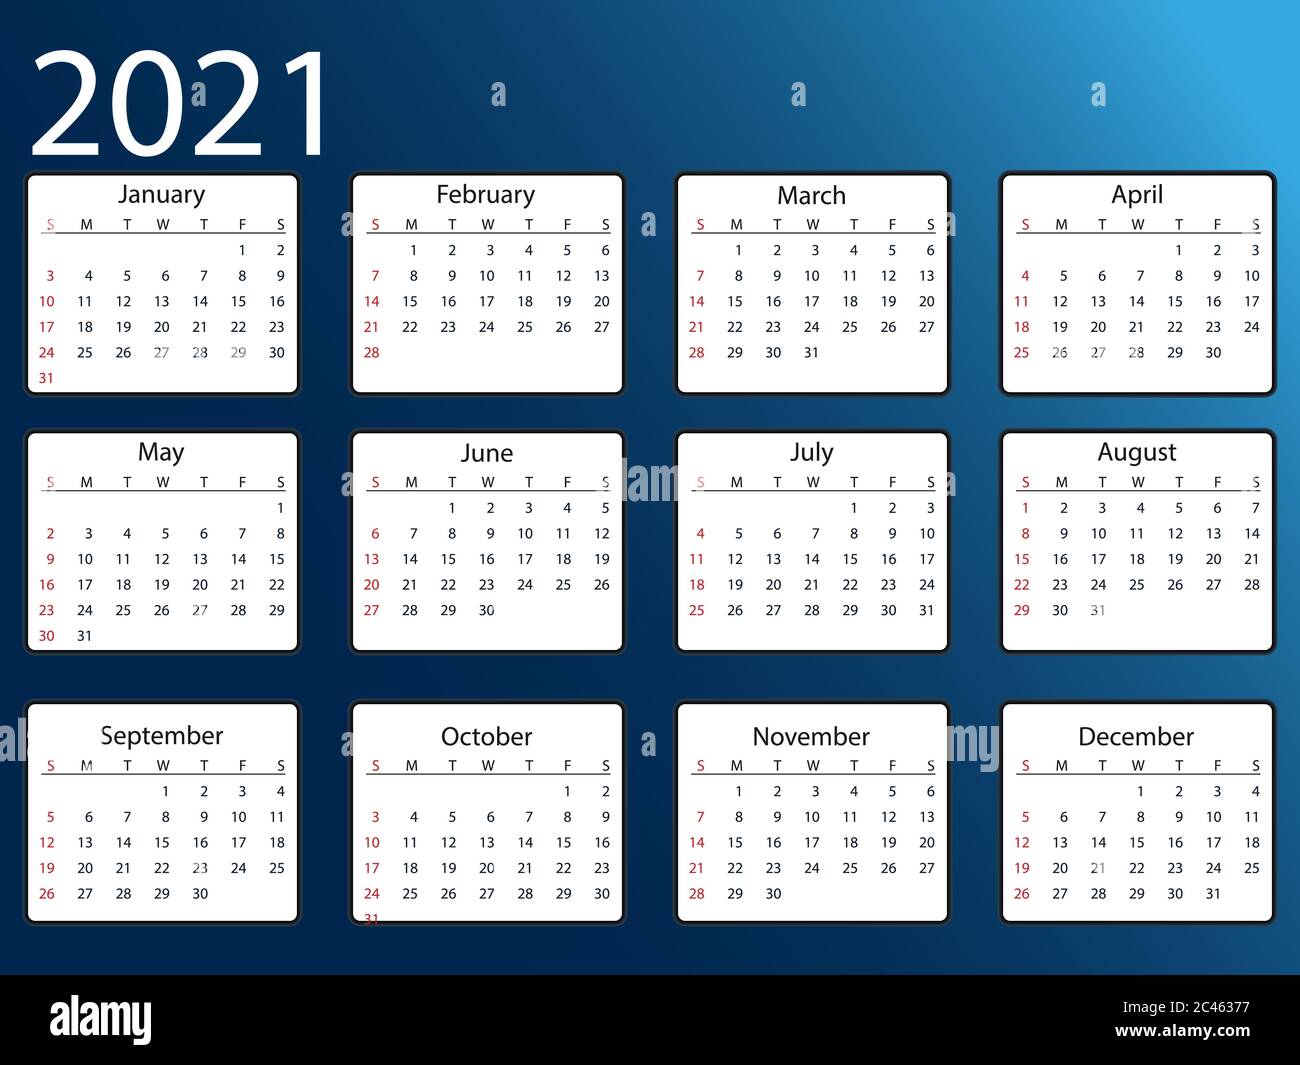 Calendrier 2021, la semaine commence le dimanche. Illustration vectorielle,  conception plate Image Vectorielle Stock - Alamy